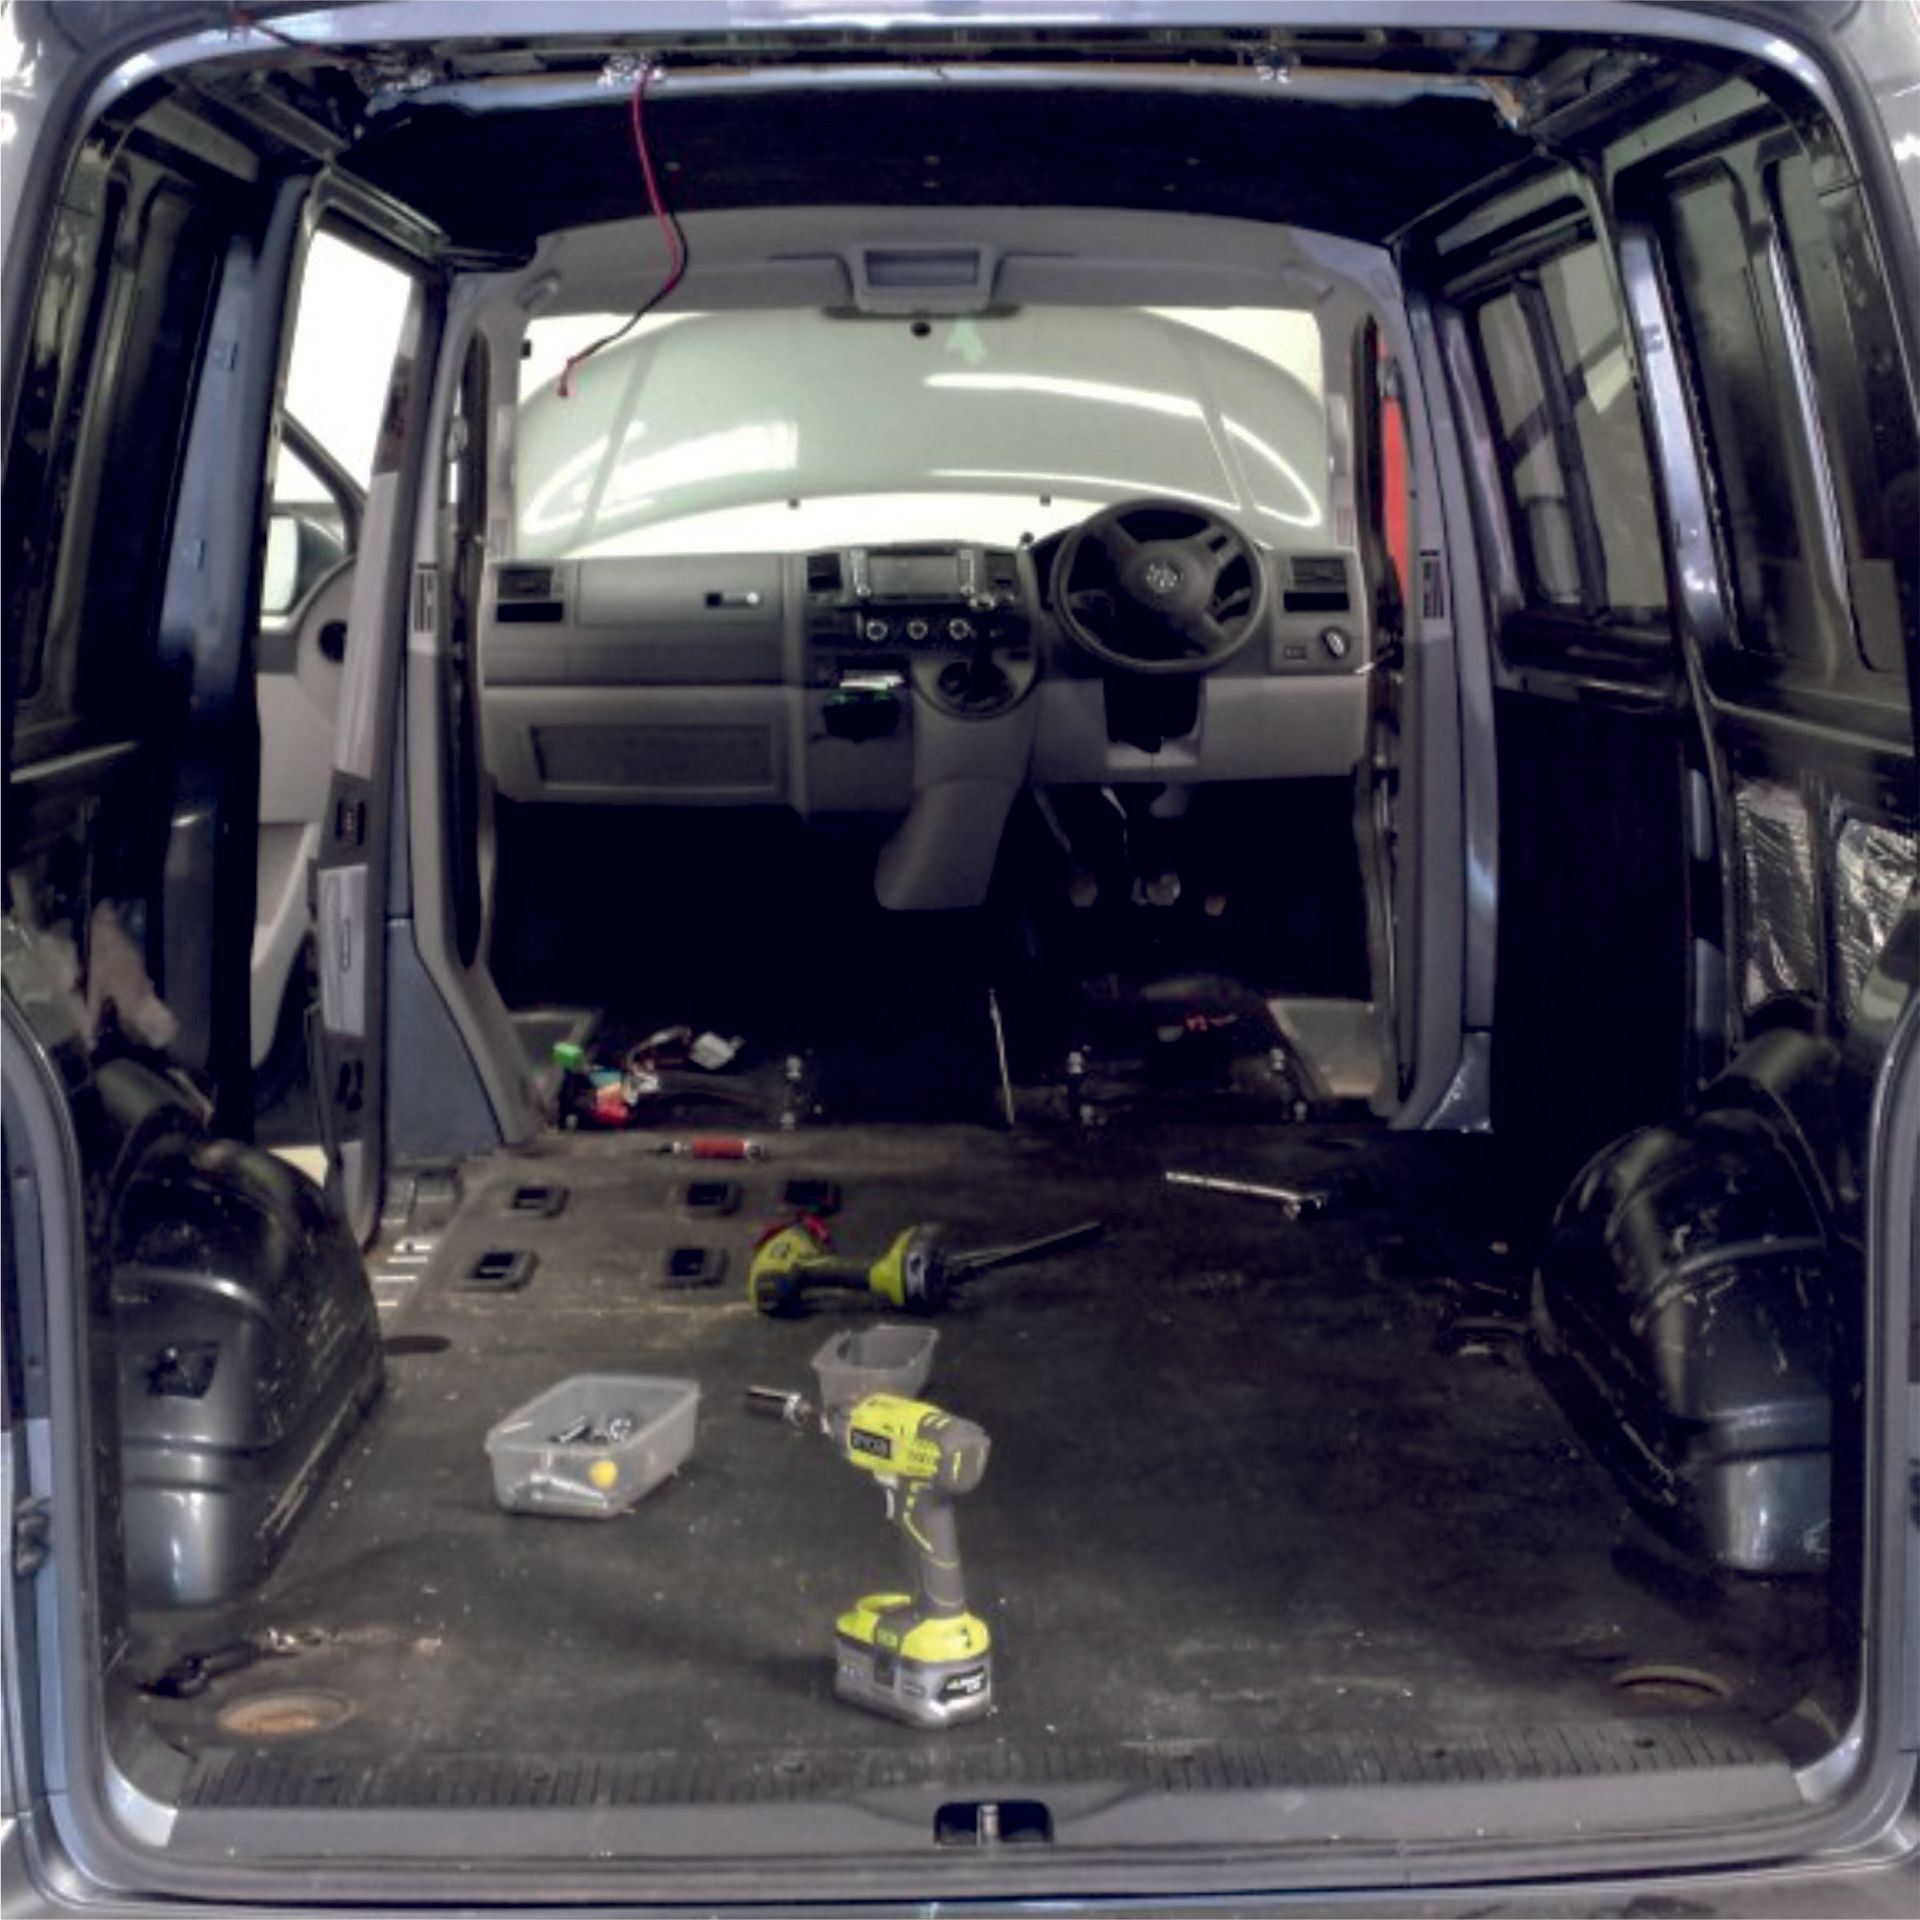 inside a stripped van